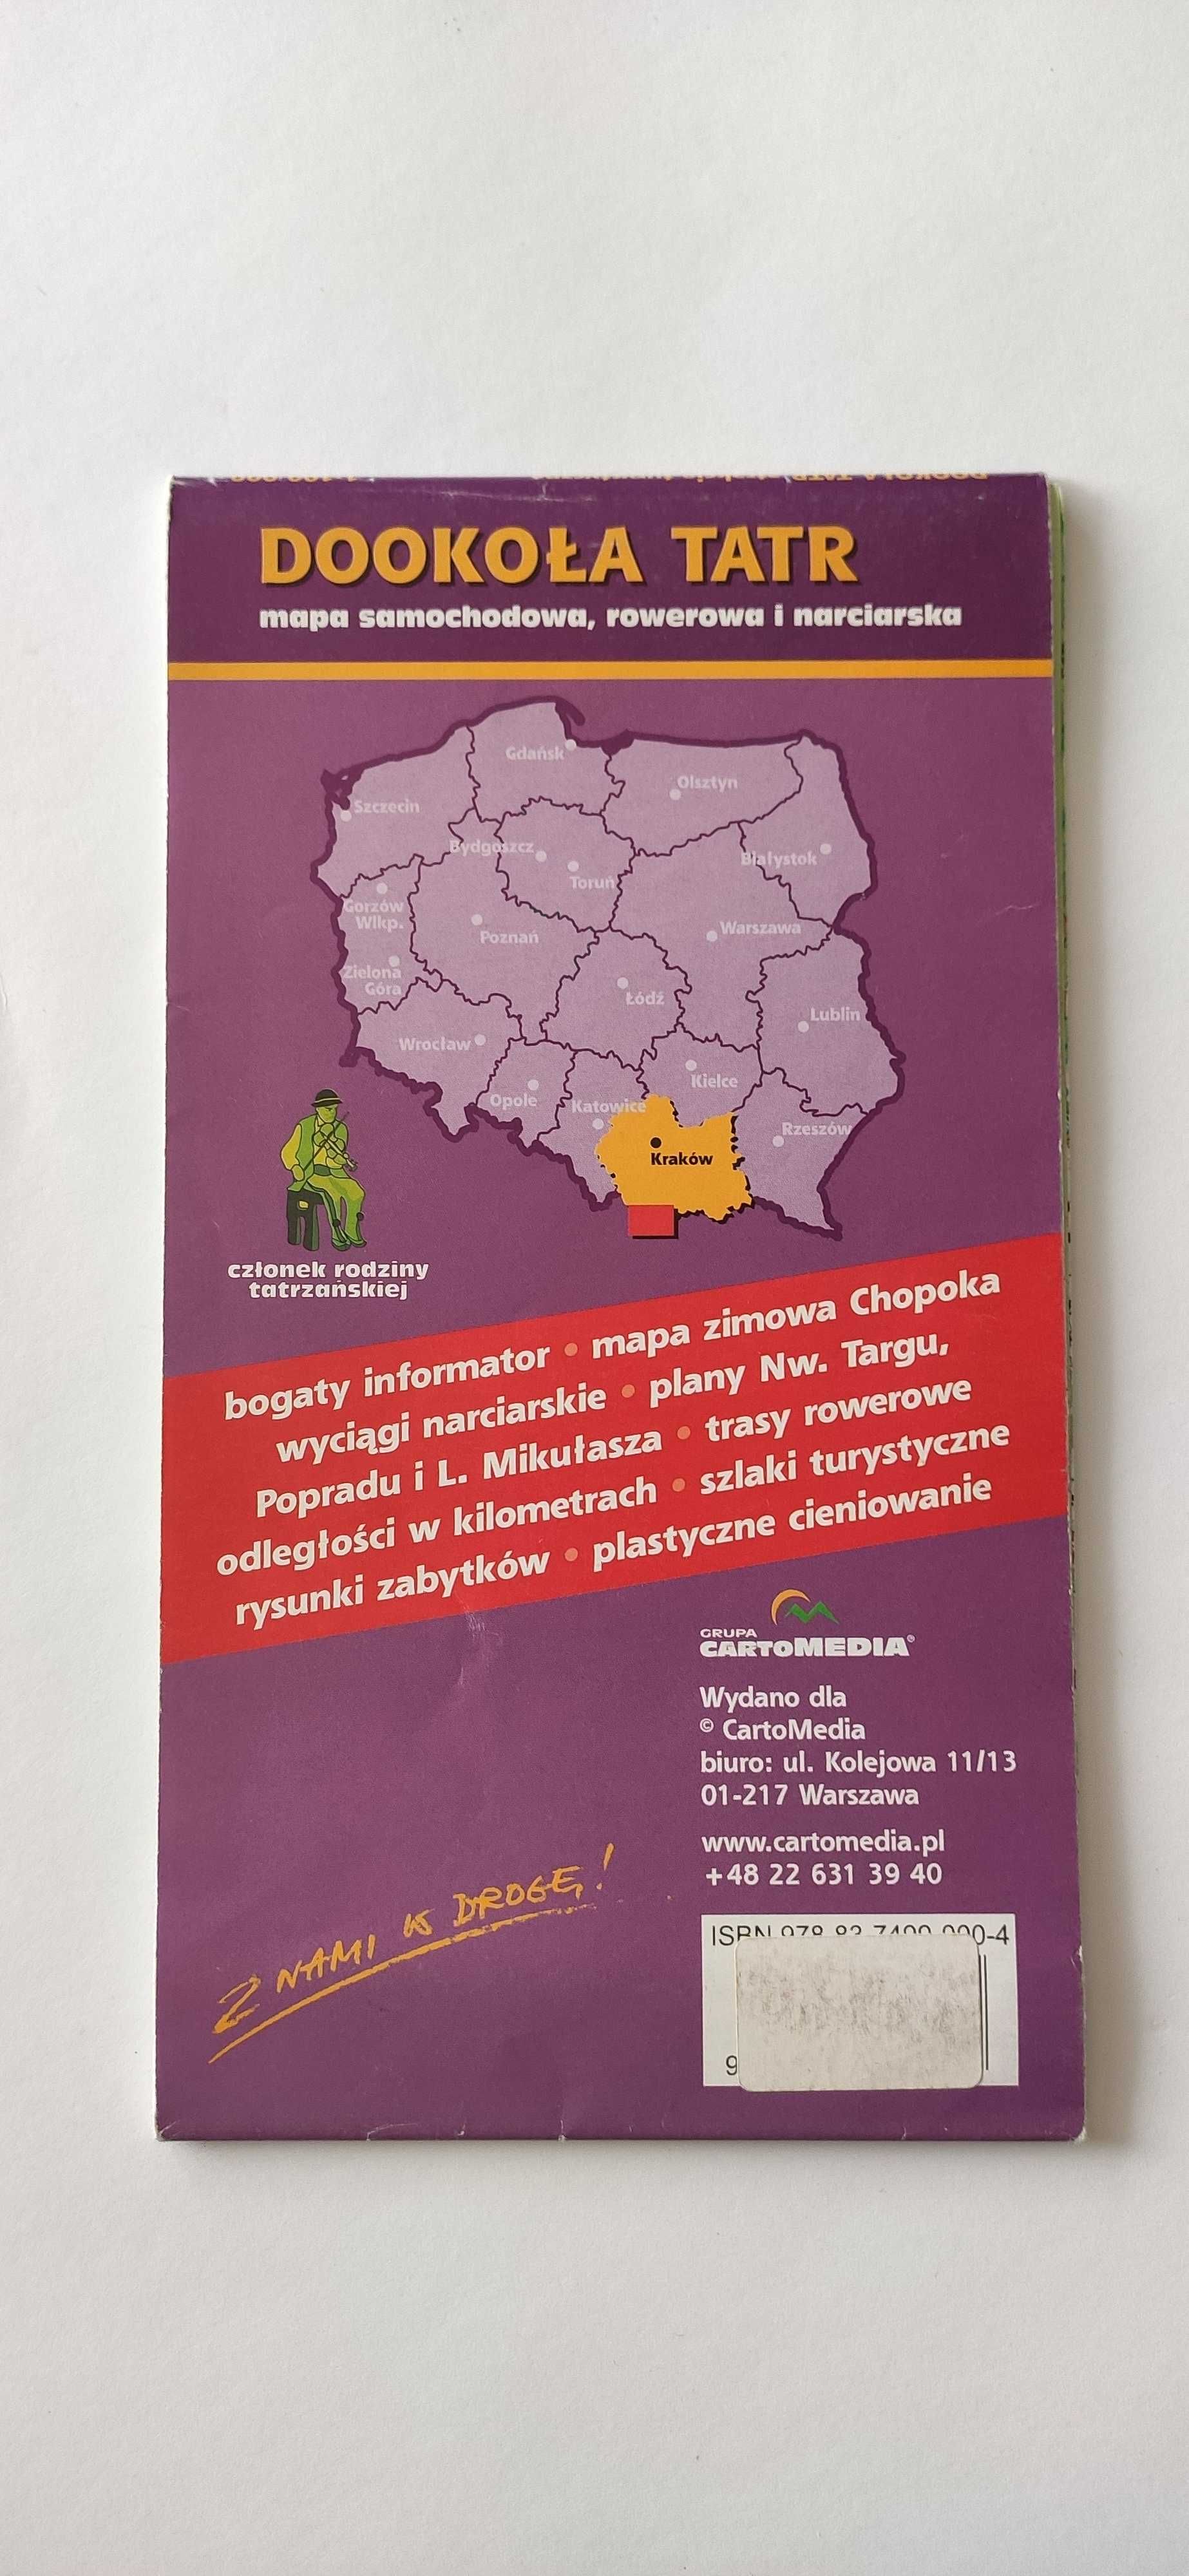 Dookoła Tatr atrakcje turystyczne 1: 100 000 mapa samoch, rower. i nar